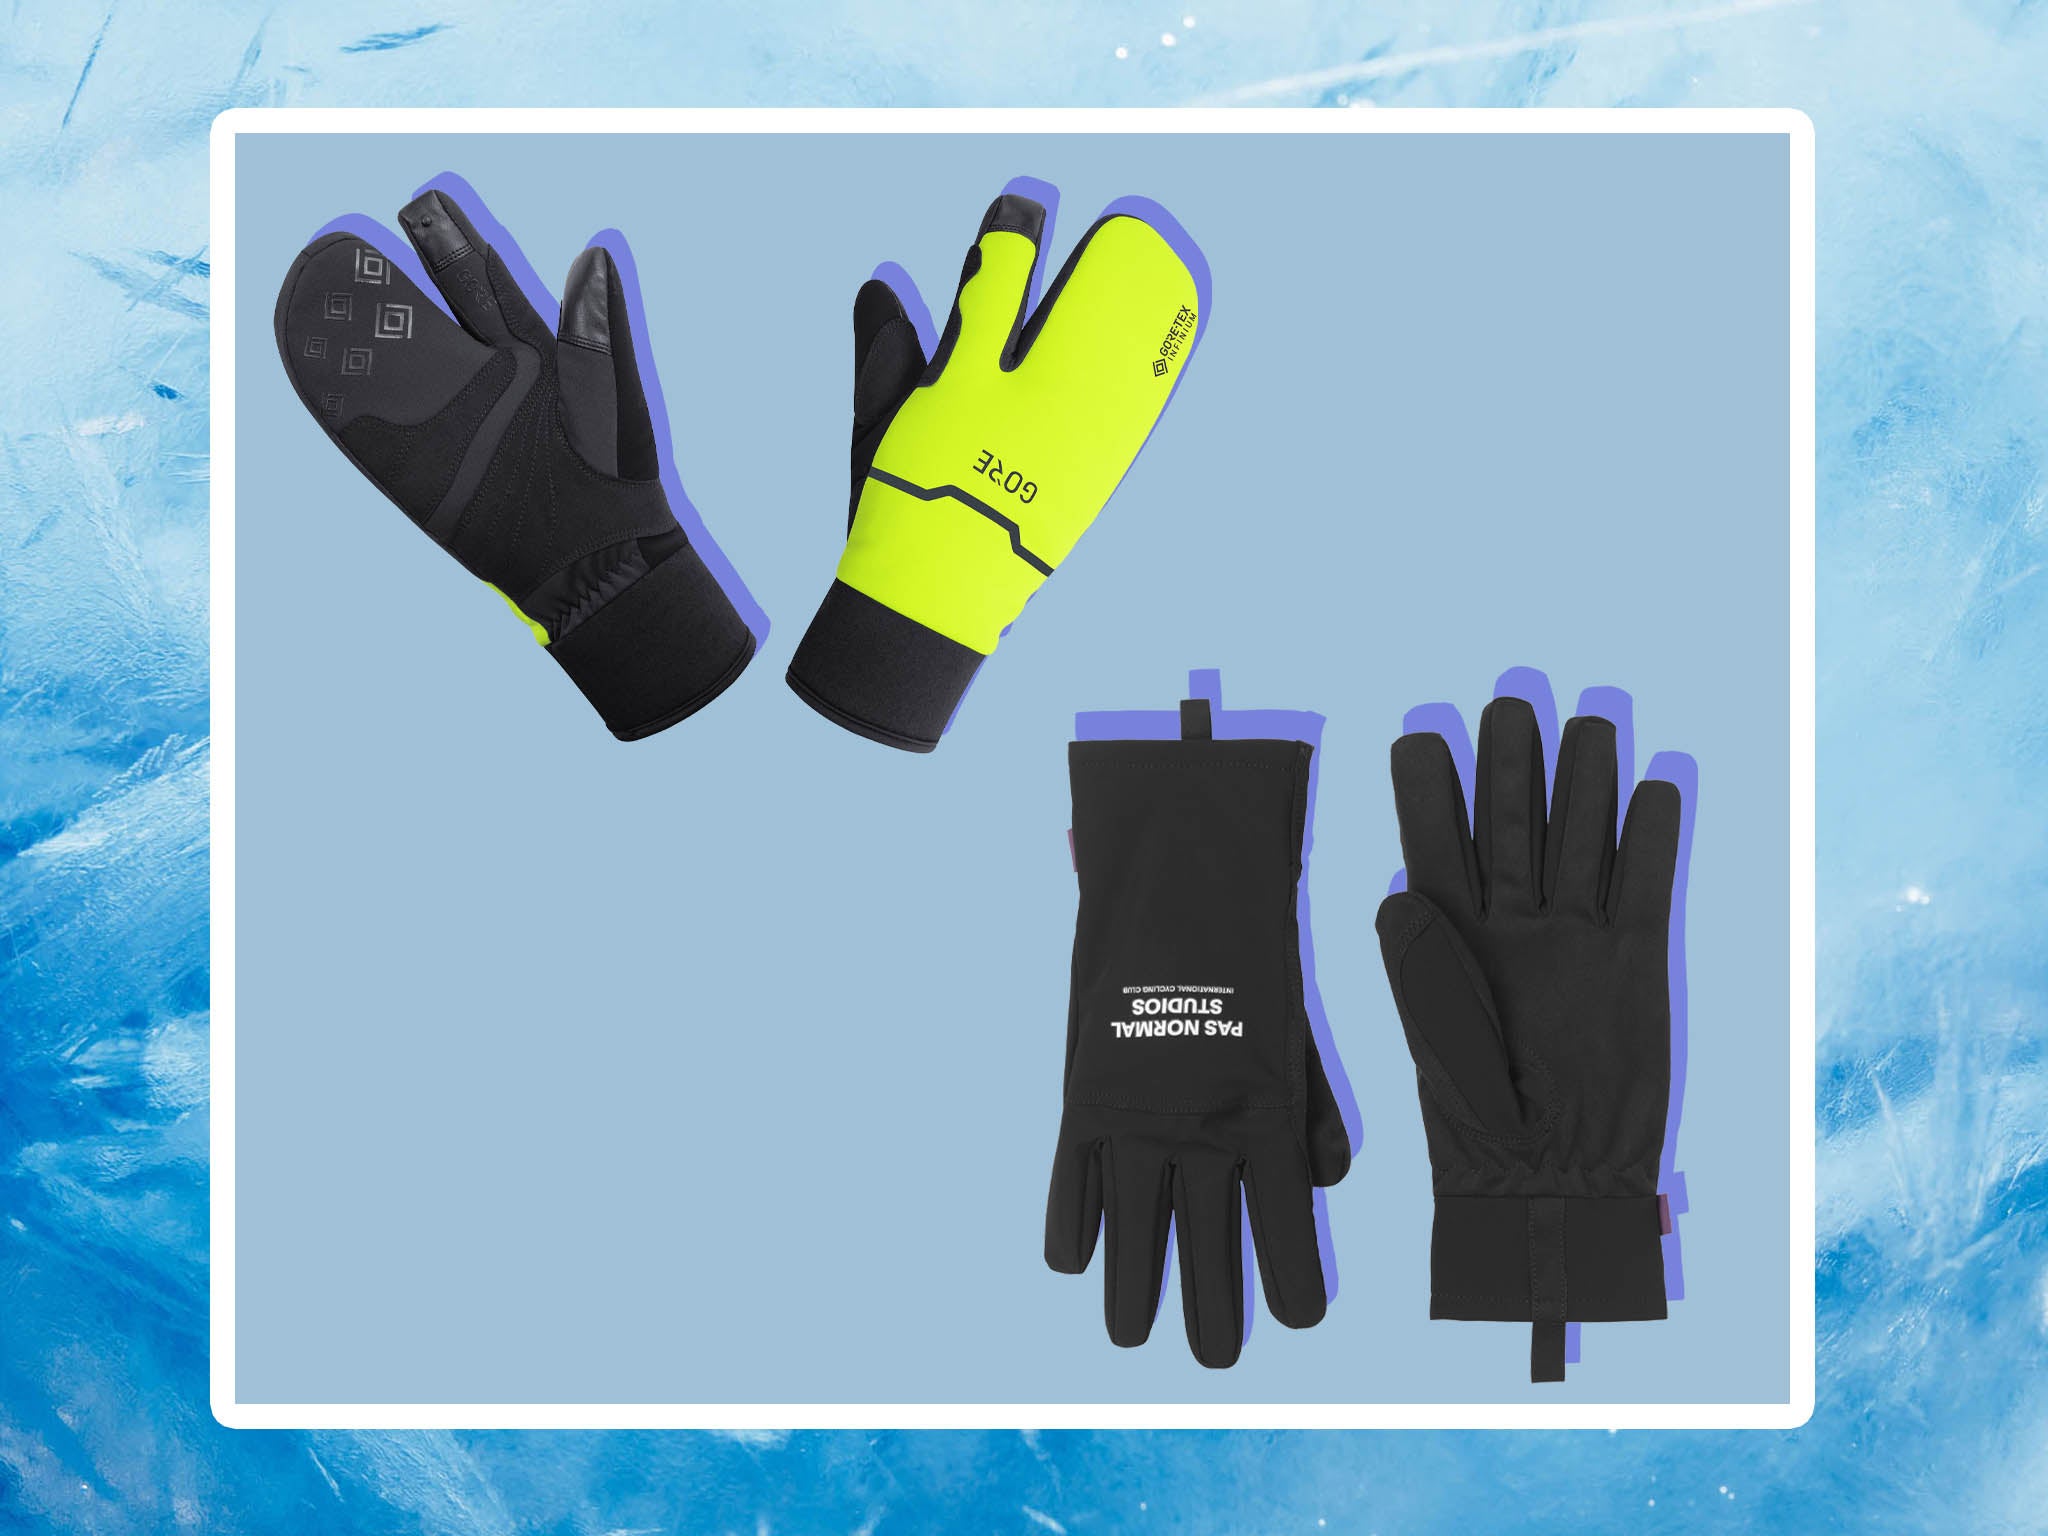 best gloves for winter bike riding